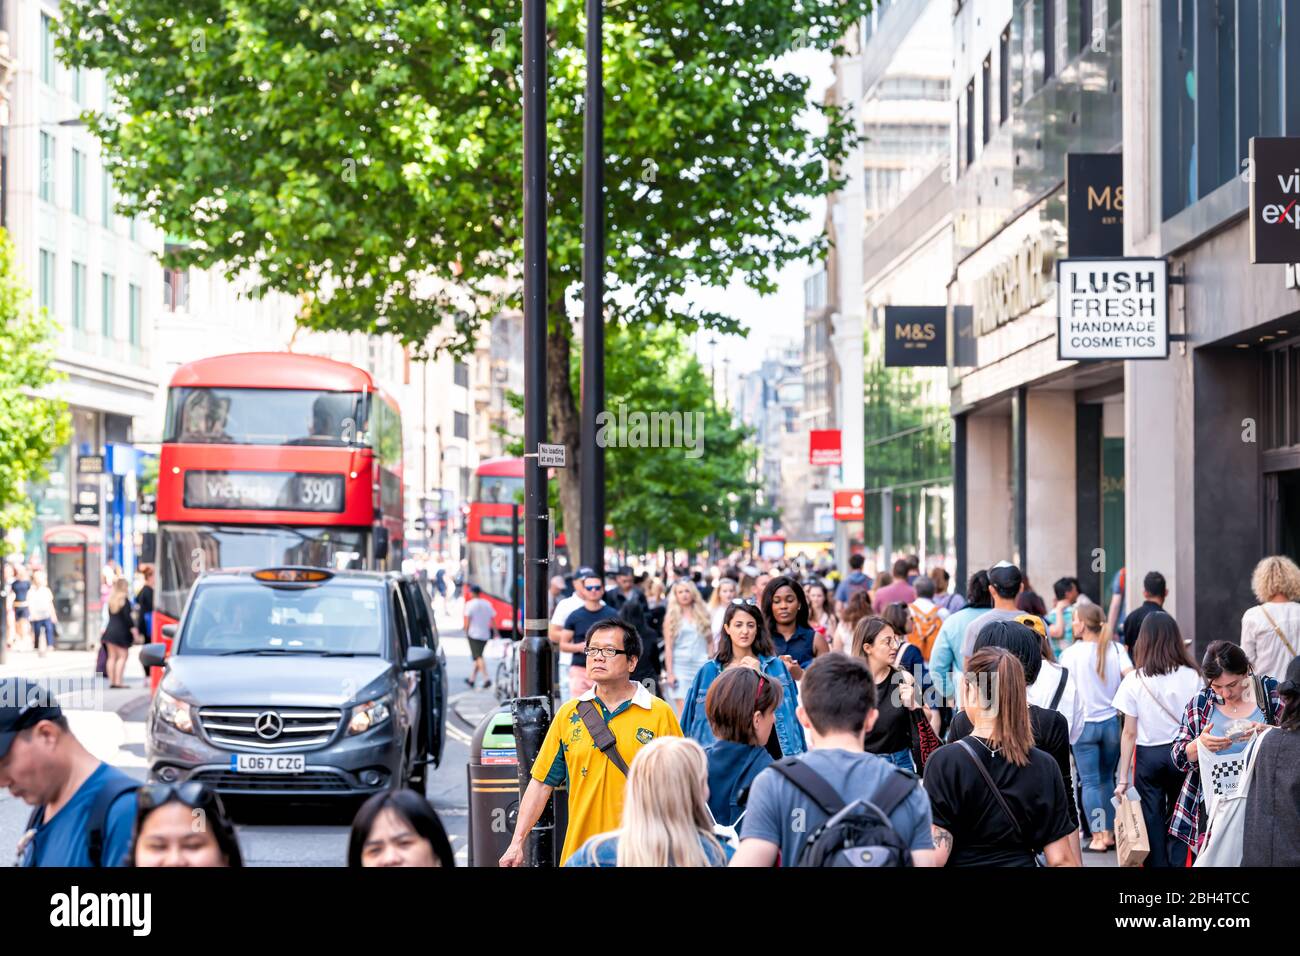 London, Großbritannien - 24. Juni 2018: Marks & Spencer Shop mit Menschenmengen, die auf dem Bürgersteig in Soho spazieren gehen, mit einem Schild am Außeneingang für üppig frisches Cosmet Stockfoto